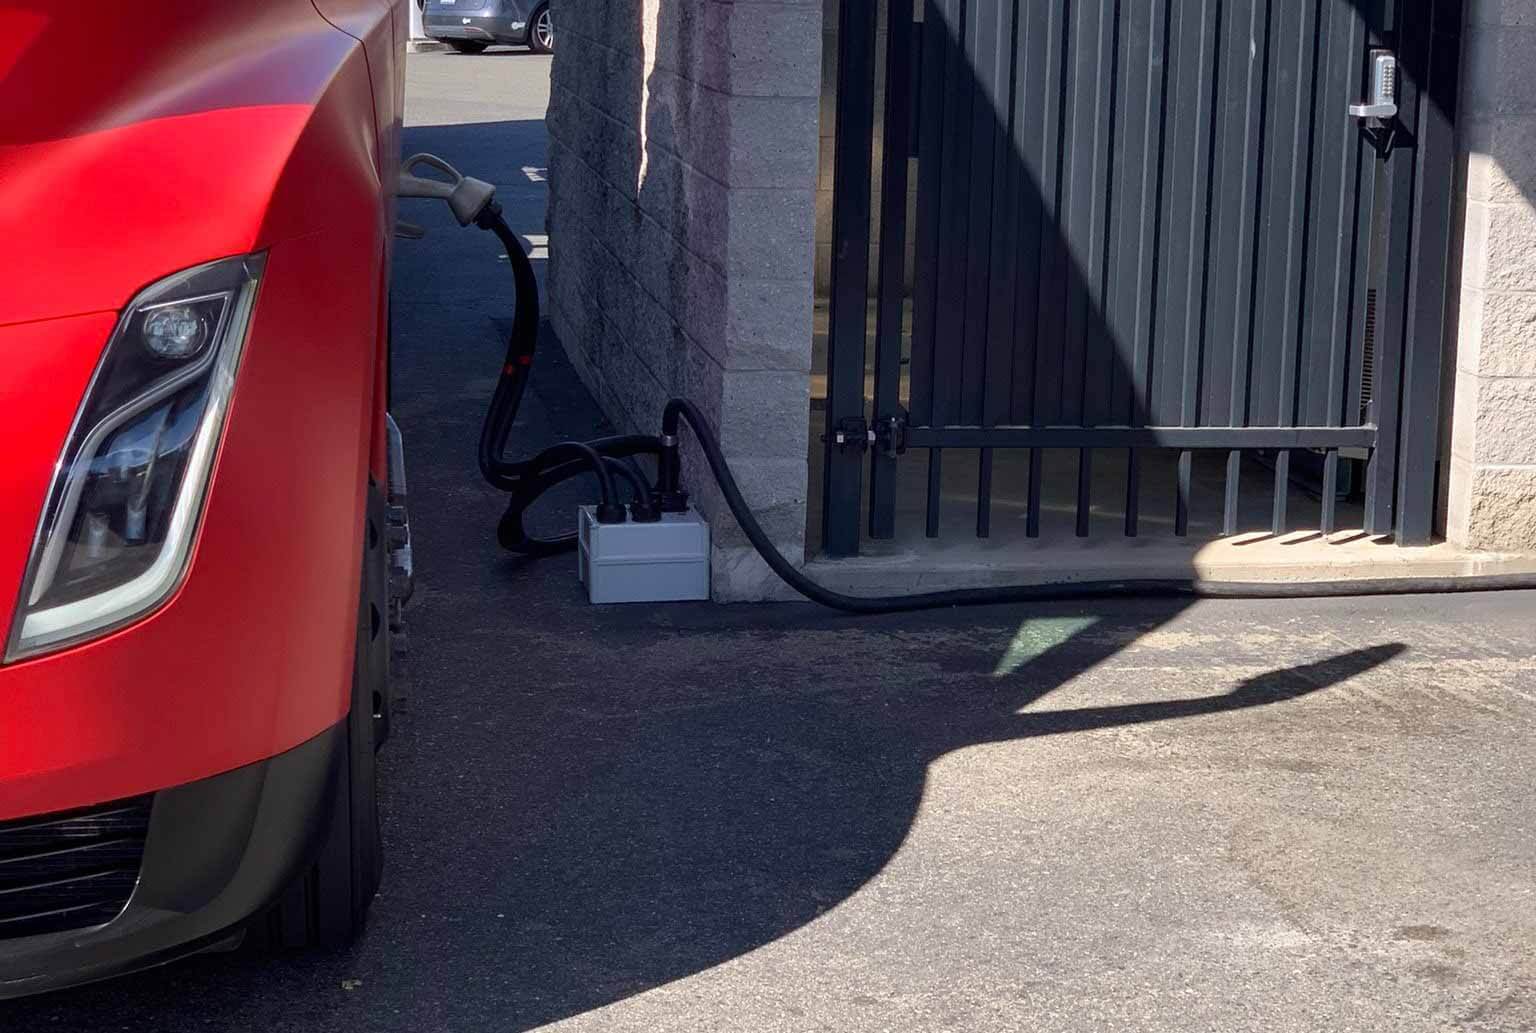 Обновленная пользовательская установка Megacharger Tesla Semi намекает на значительное улучшение батареи